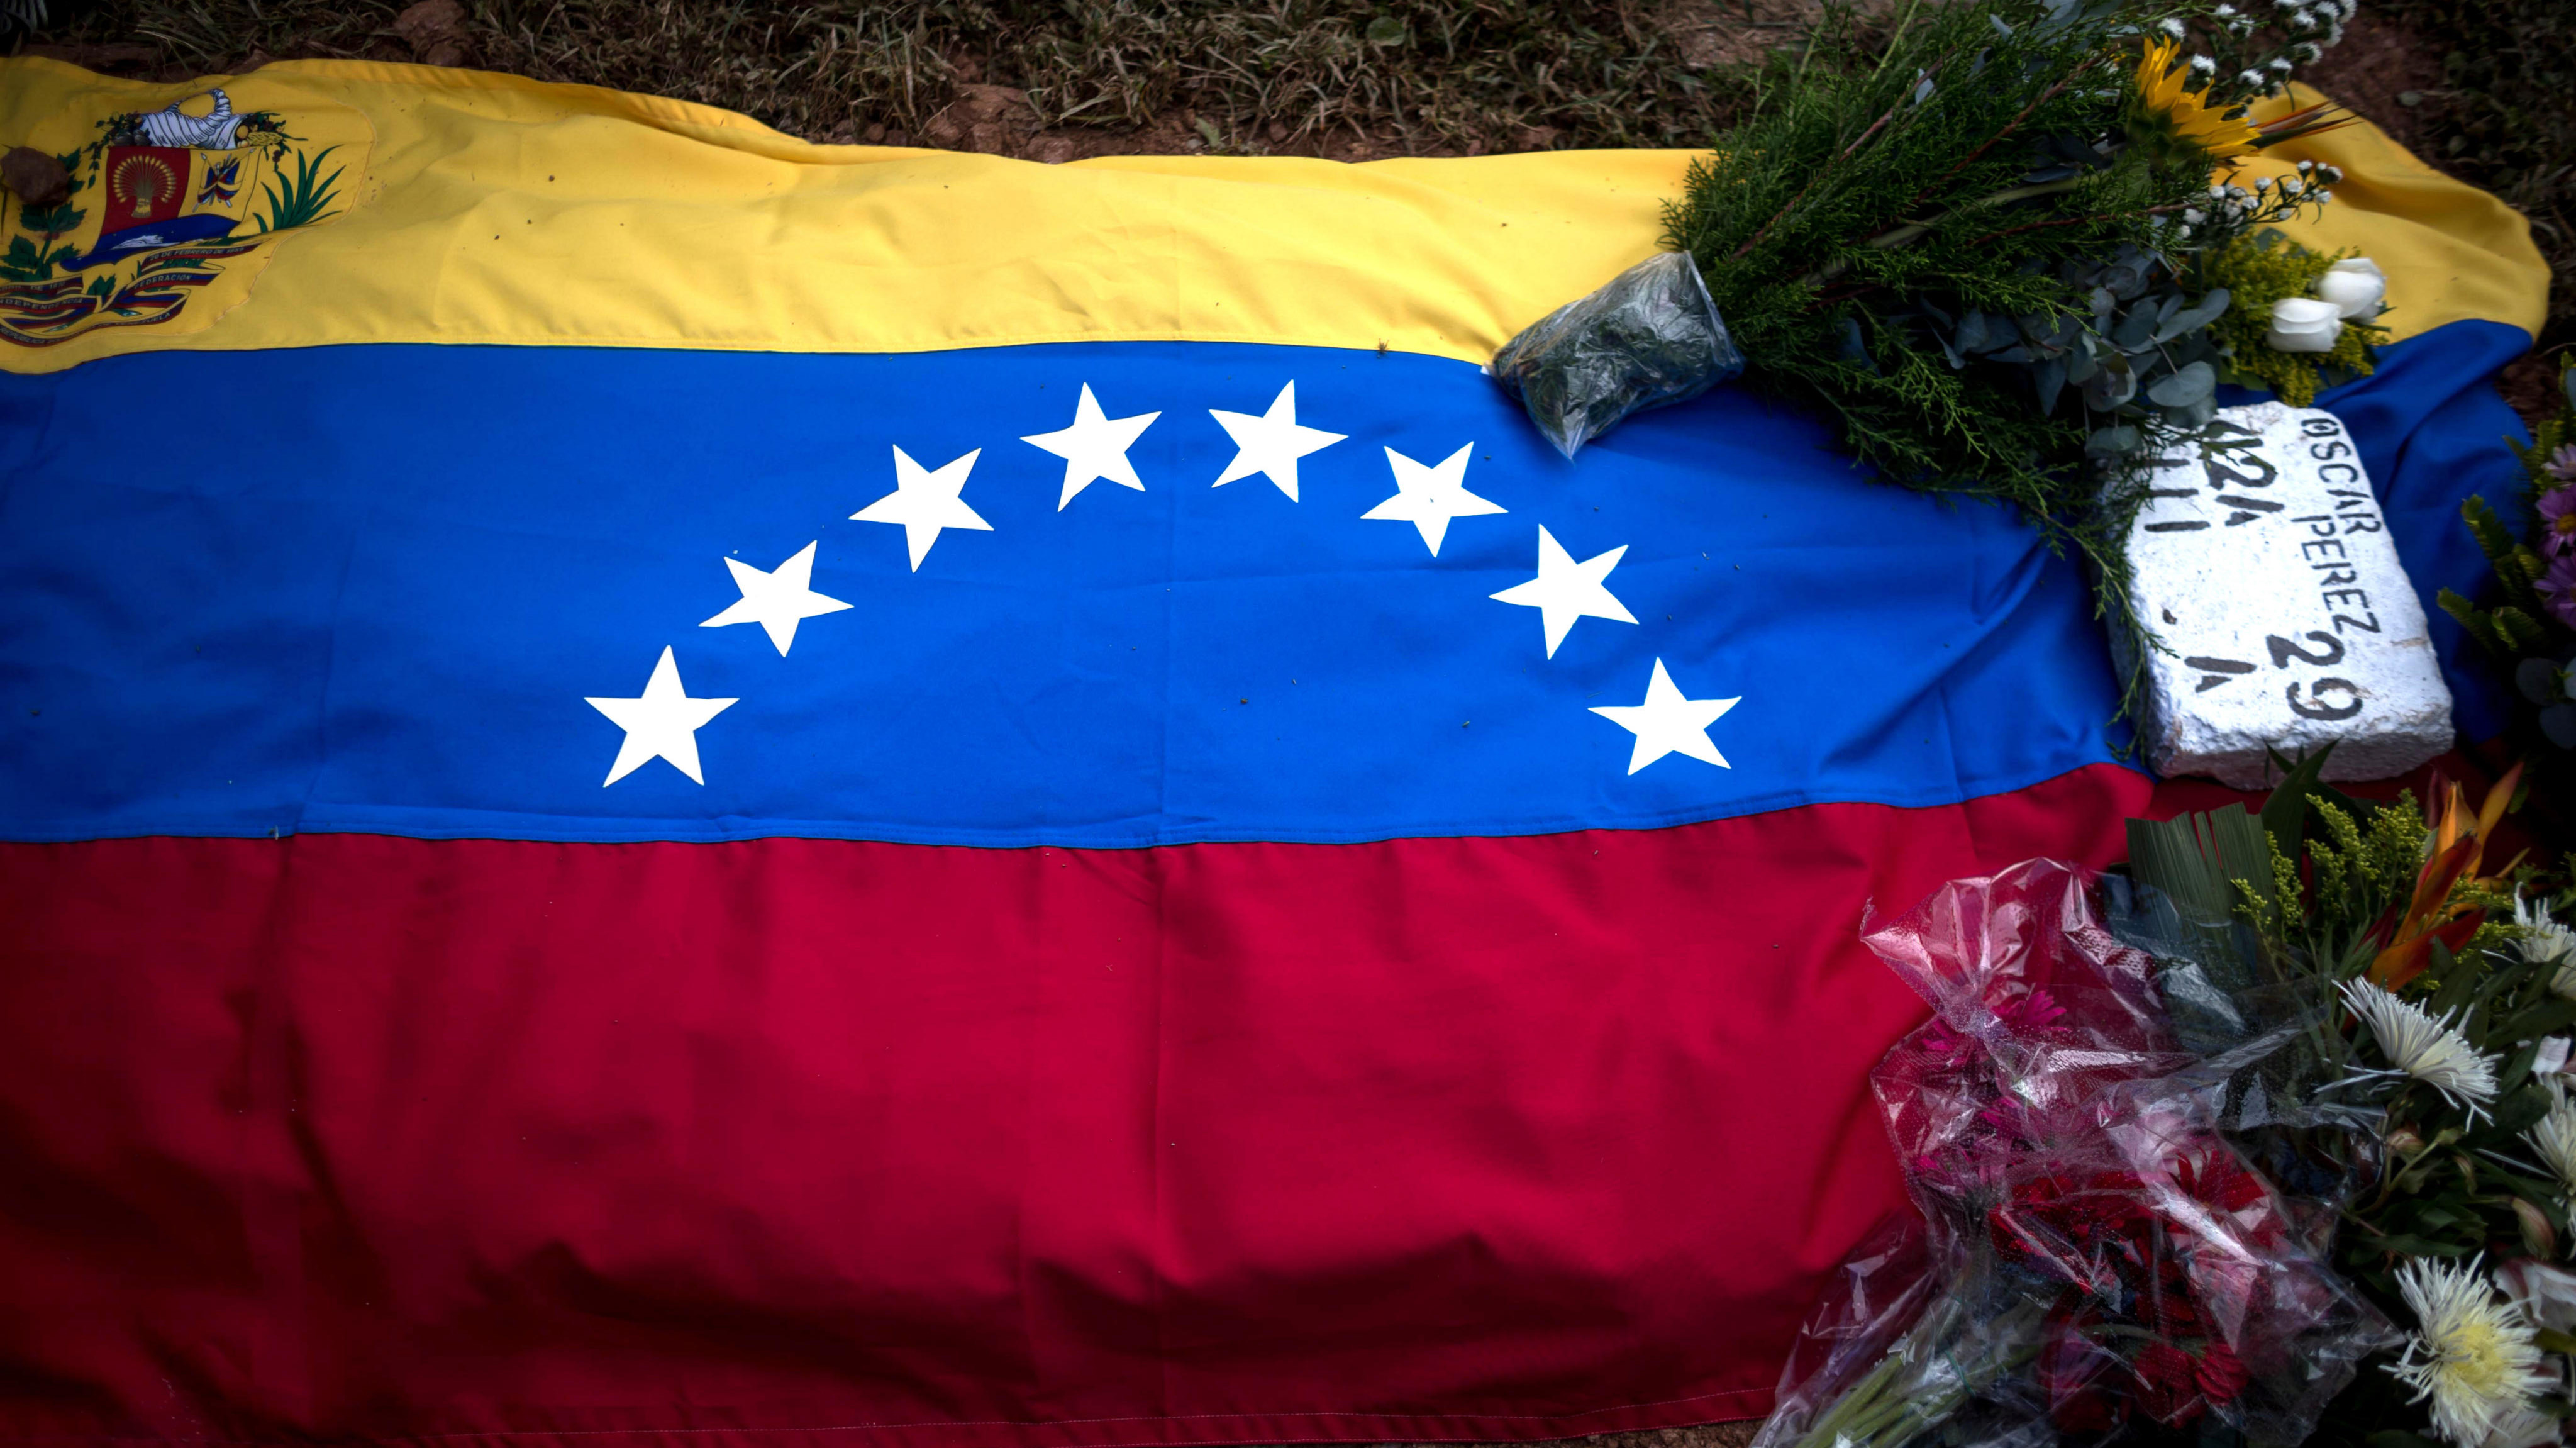 Cuerpo de ex policía Óscar Pérez fue sepultado en Venezuela sin autorización de familiares